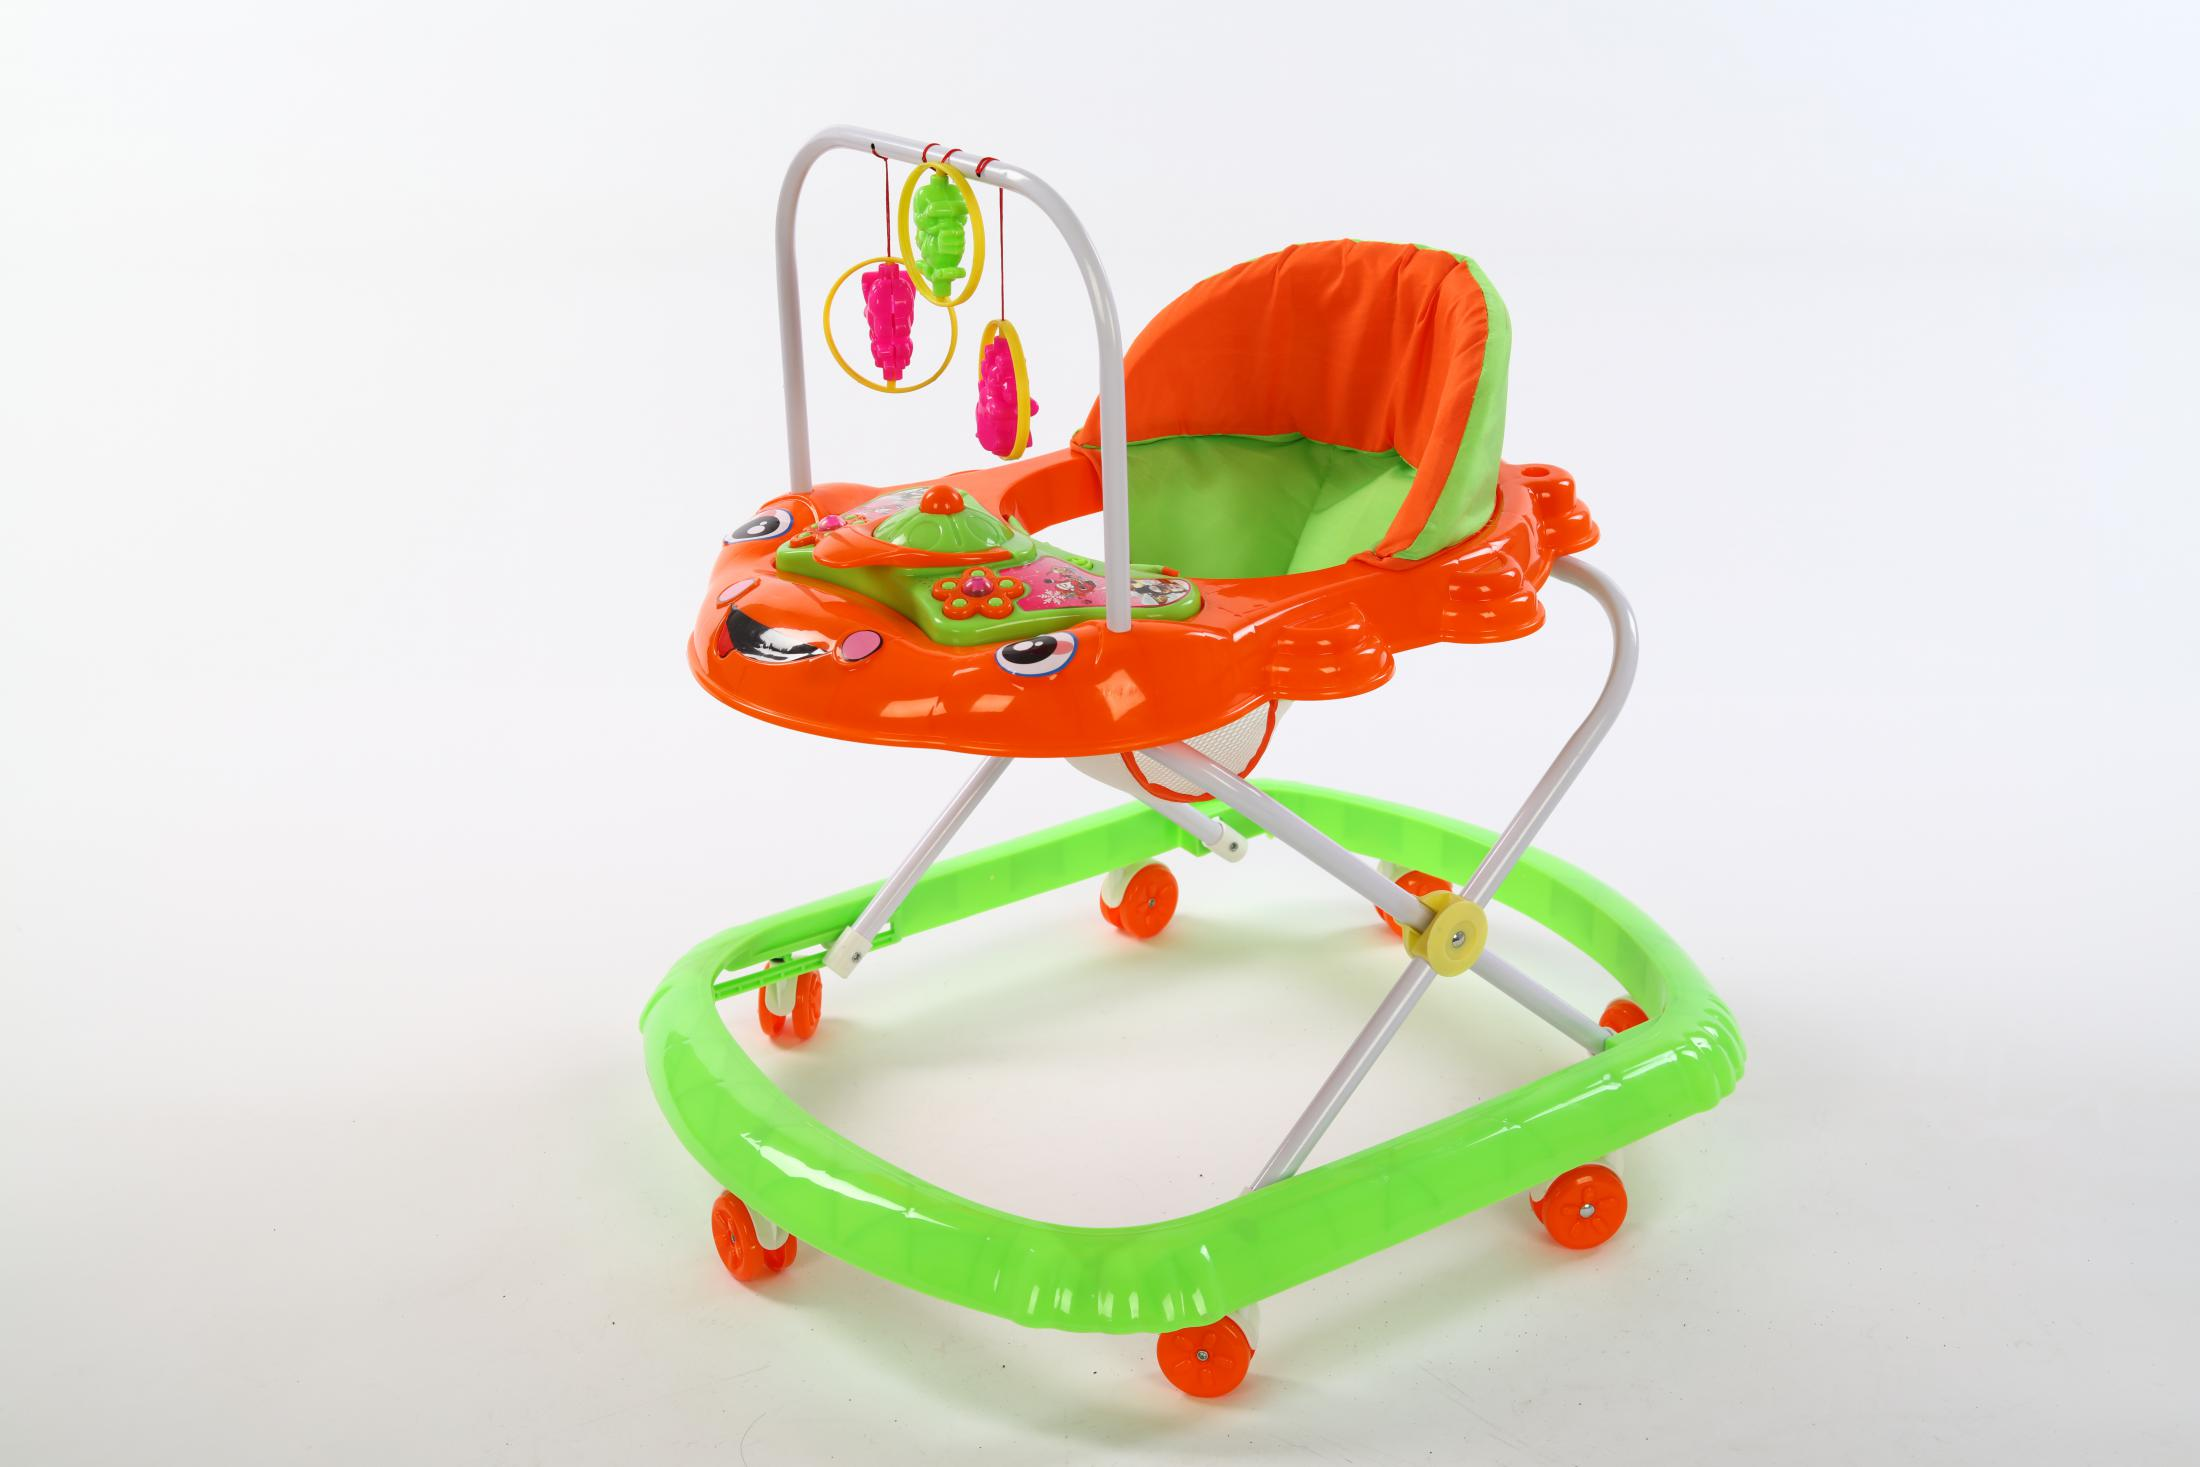 Zhorya 8 wheels adjustable height wholesale simple baby walker round